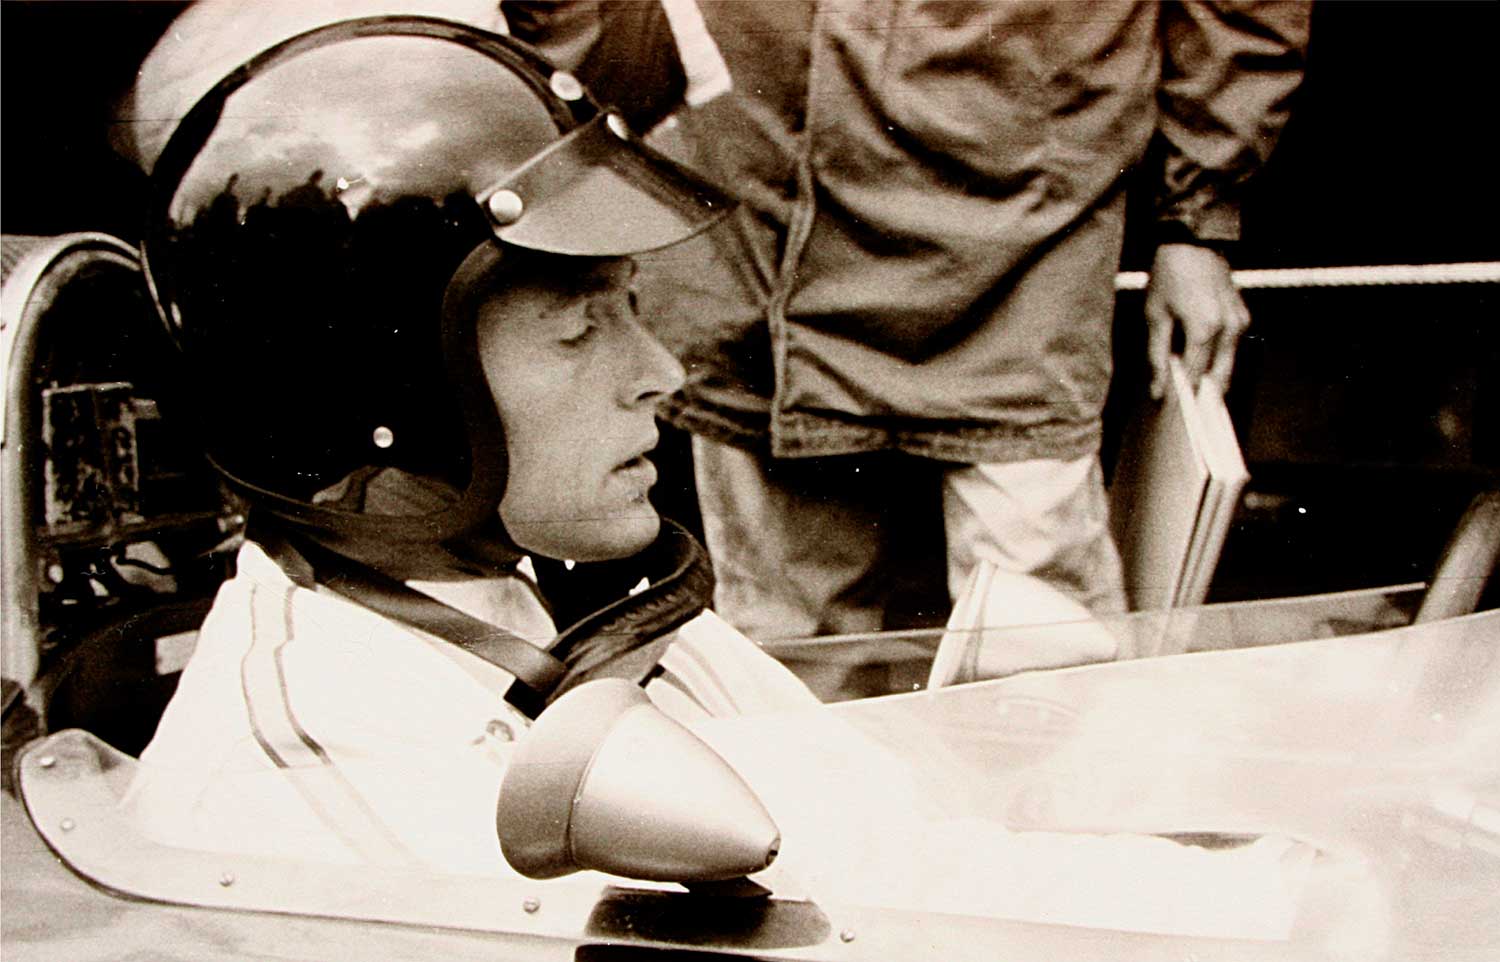 Dan Gurney 1965 während des Trainings zum Großen Preis von Deutschland auf dem Nürburgring. Foto: Lothar Spurzem, Lizenz: CC BY-SA 2.0 de